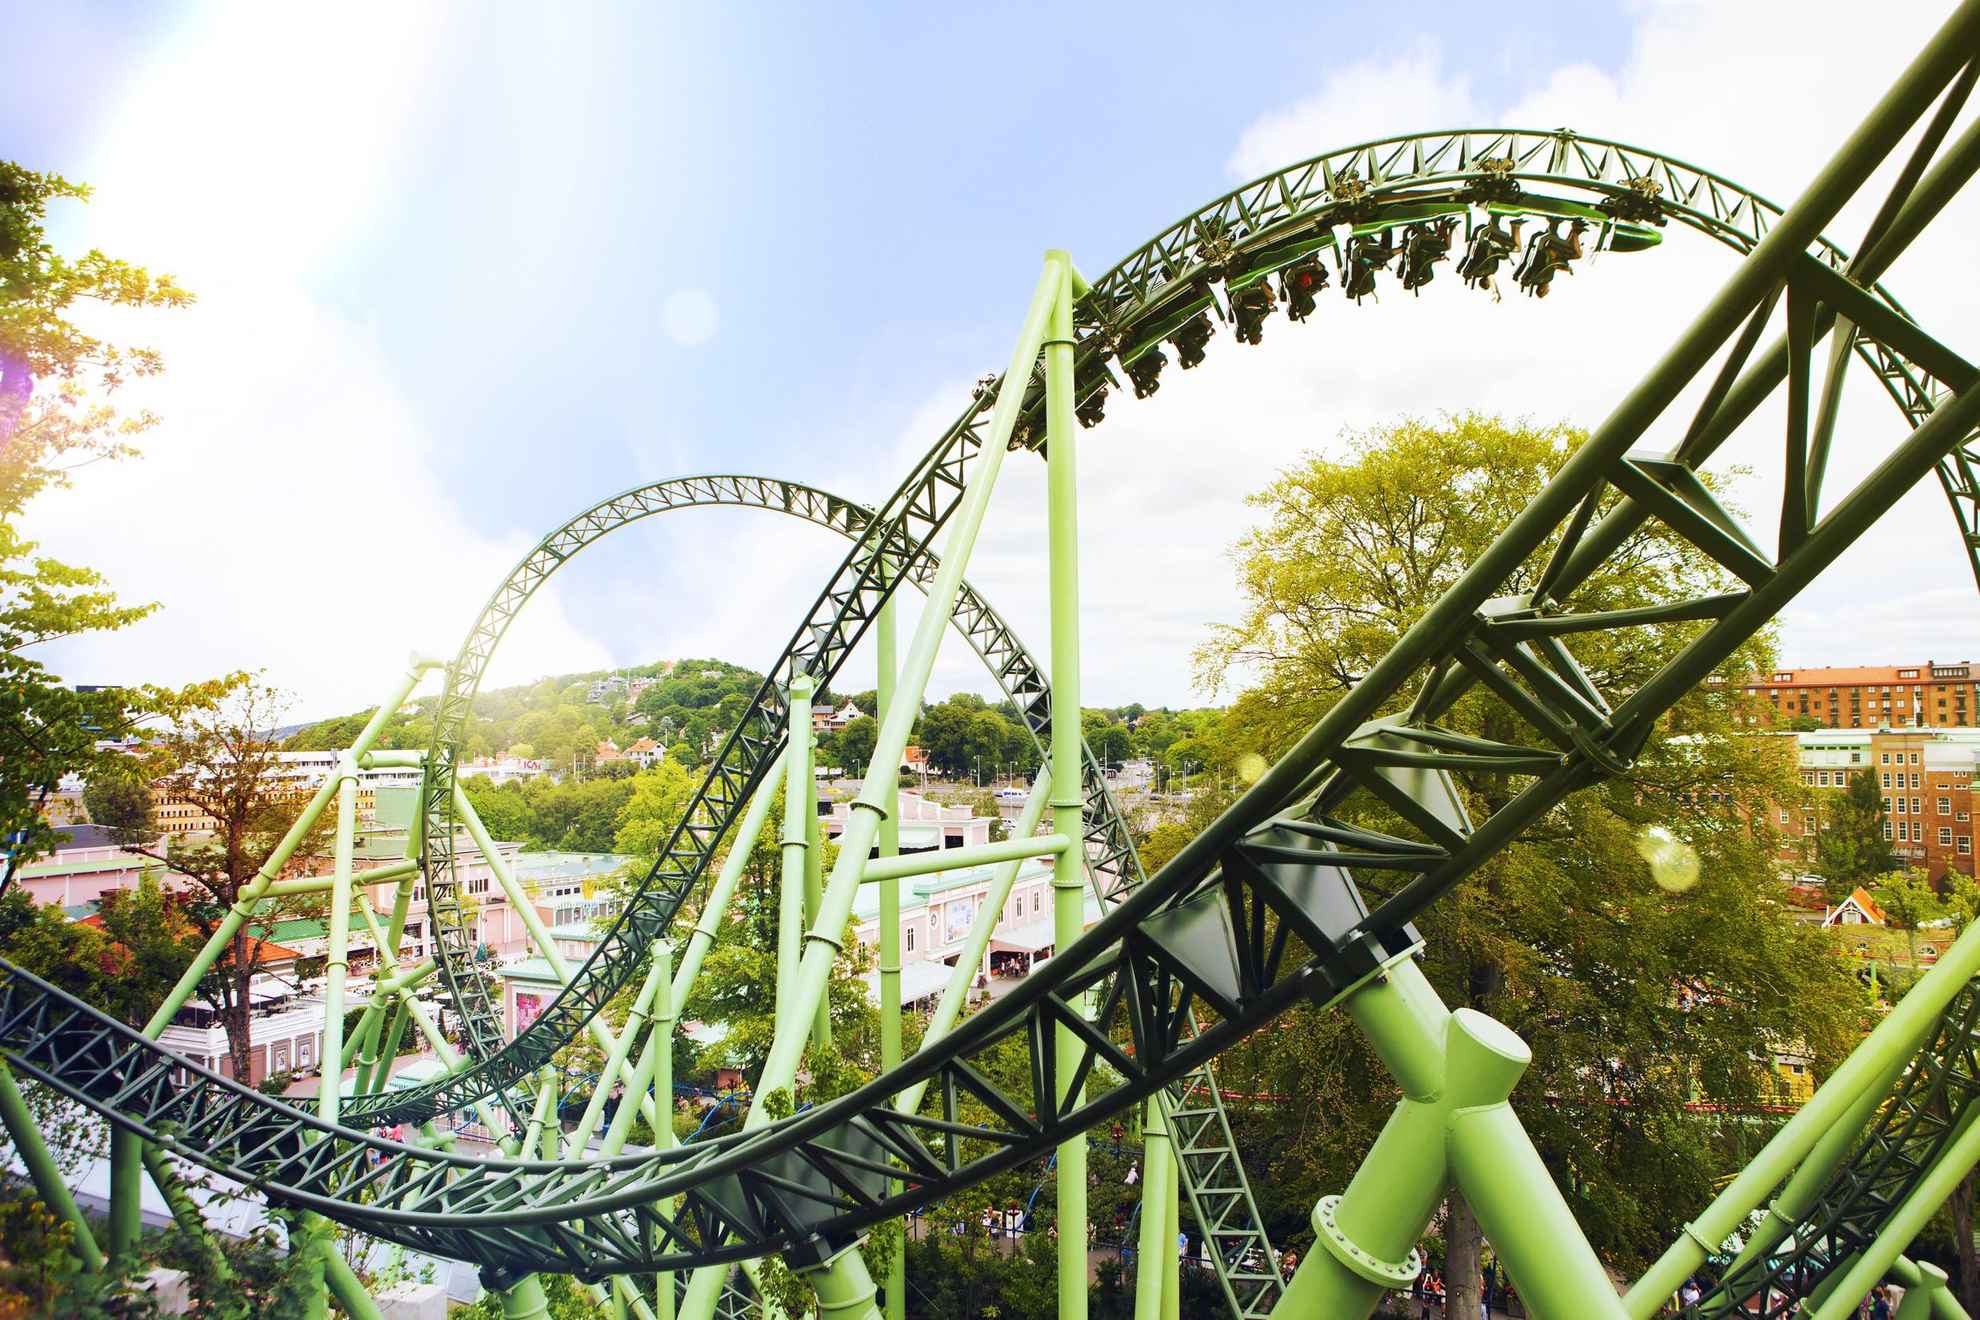 Een rollercoaster in een groene omgeving.